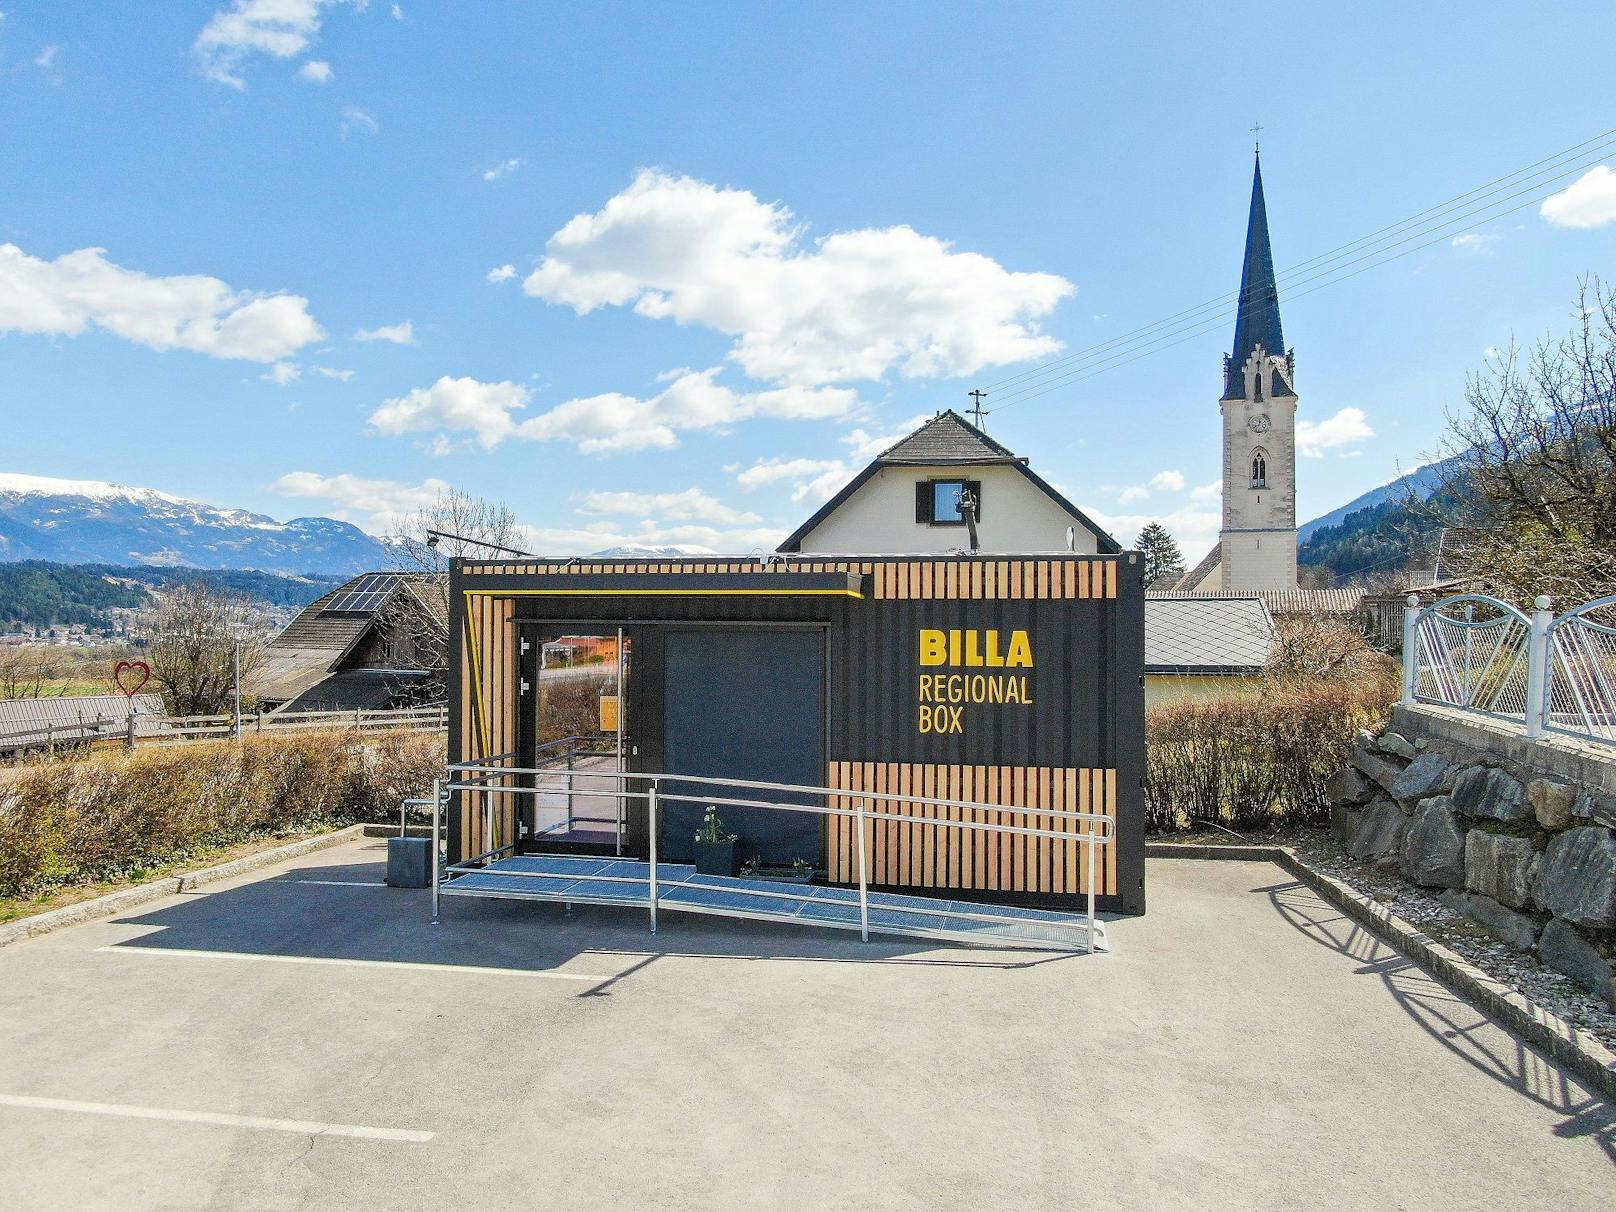 So sieht die "Billa Regional Box" in Baldramsdorf aus.